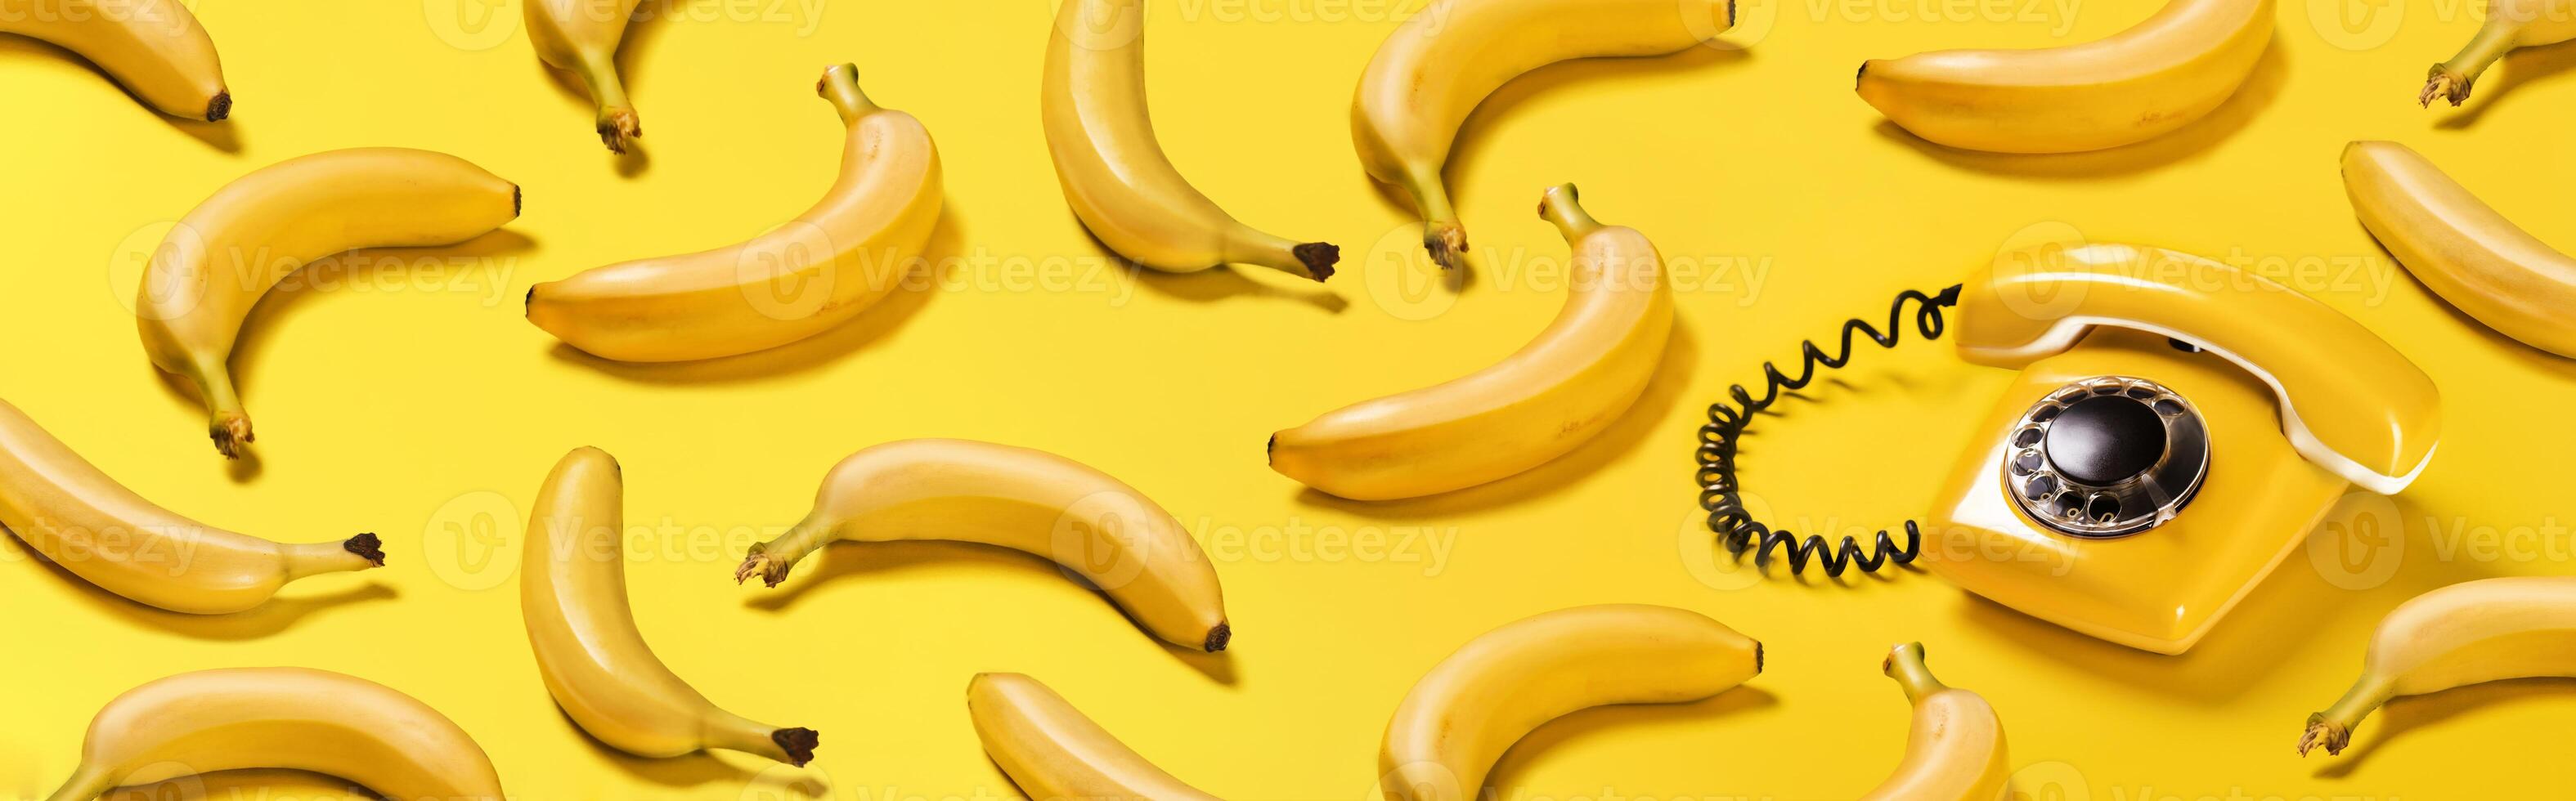 banier bananen en oud geel telefoon met moeilijk schaduwen patroon Aan geel achtergrond bananentelefoon foto